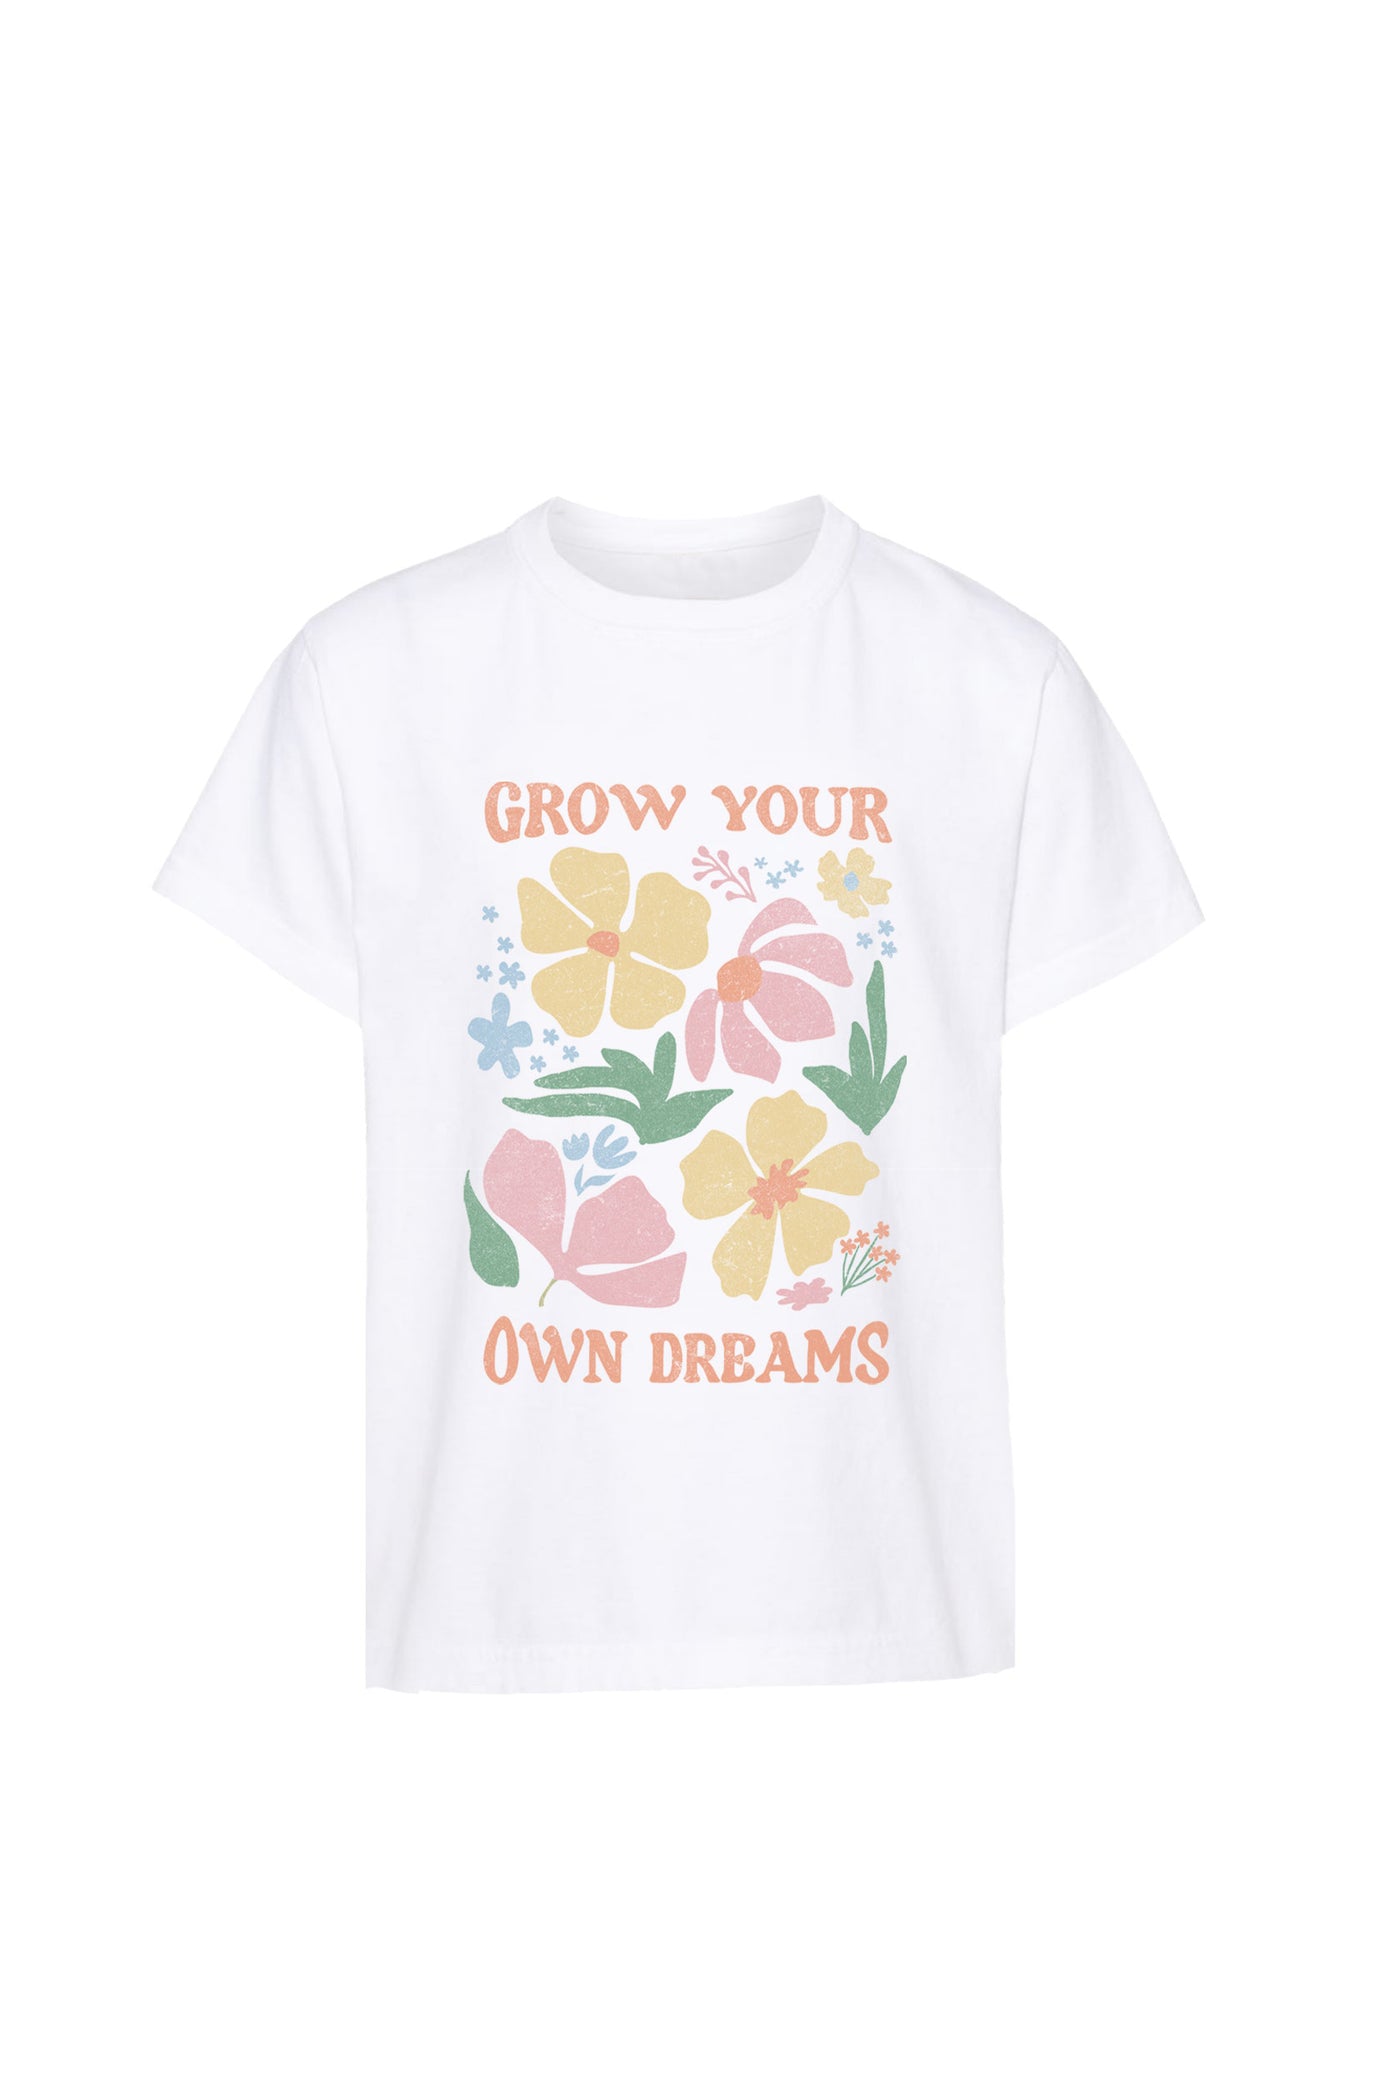 Kid's Floral Dreams T-shirt-Unisex